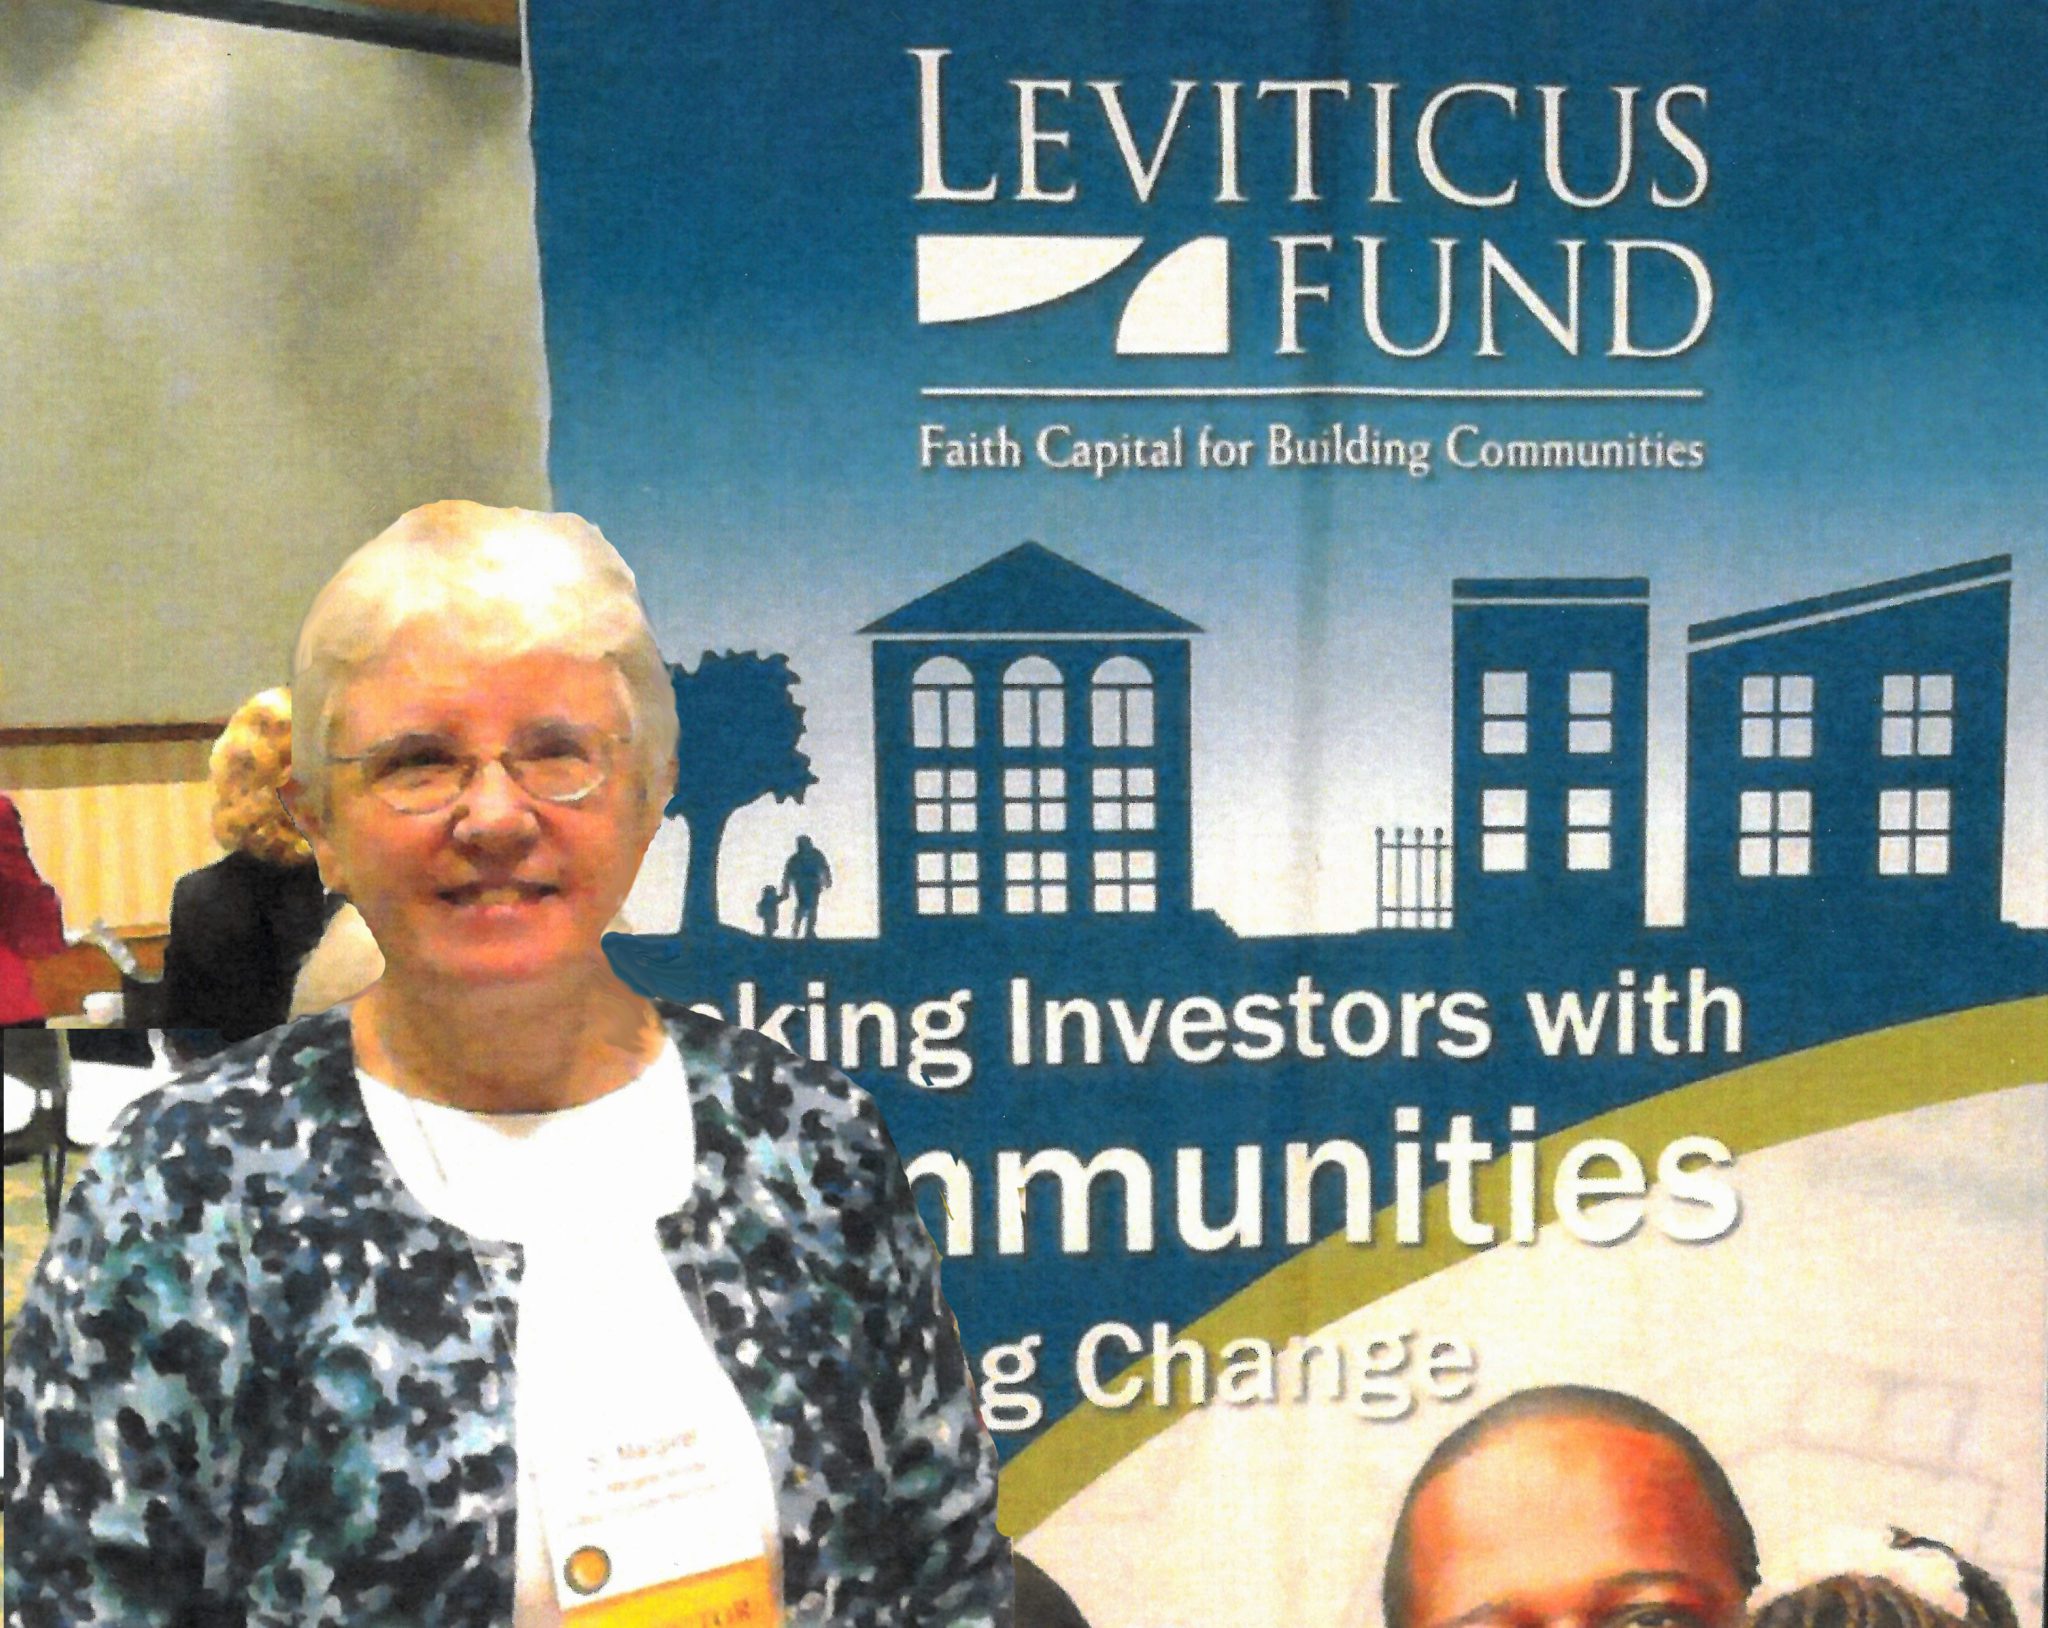 1983 –The Leviticus 25:23 Alternative Fund